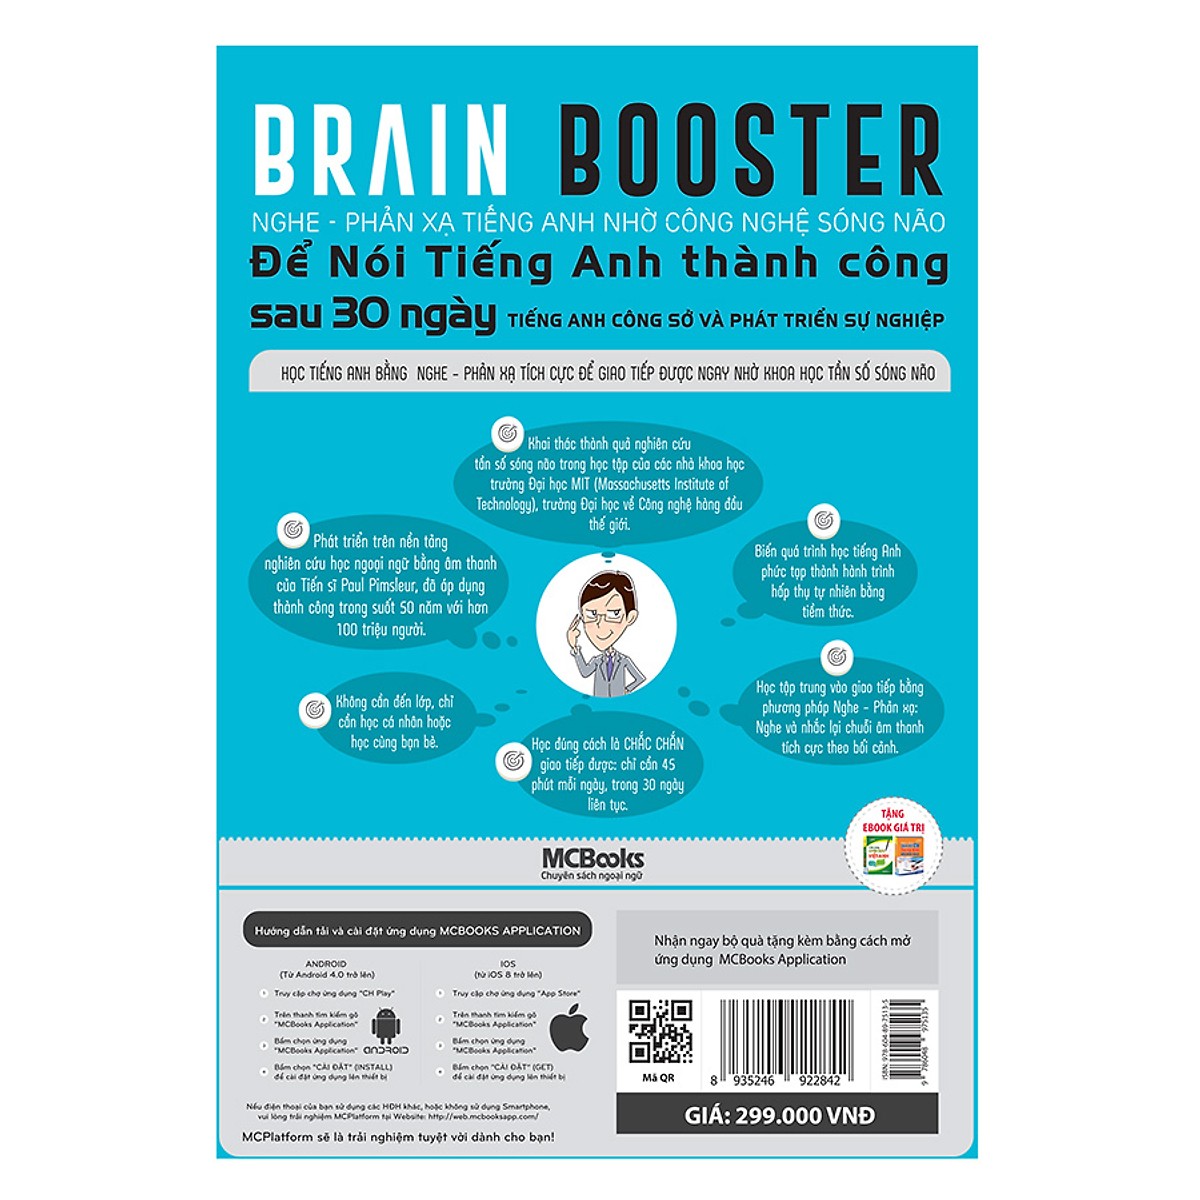 Brain Booster Nghe Phản Xạ Tiếng Anh Nhờ Công Nghệ Sóng Não - Tiếng Anh Phát Triển Sự Nghiệp (Học Kèm App MCBooks Application) (Tặng Ebooka Giá Trị) (Tặng Kèm Cây Viết Galaxy)